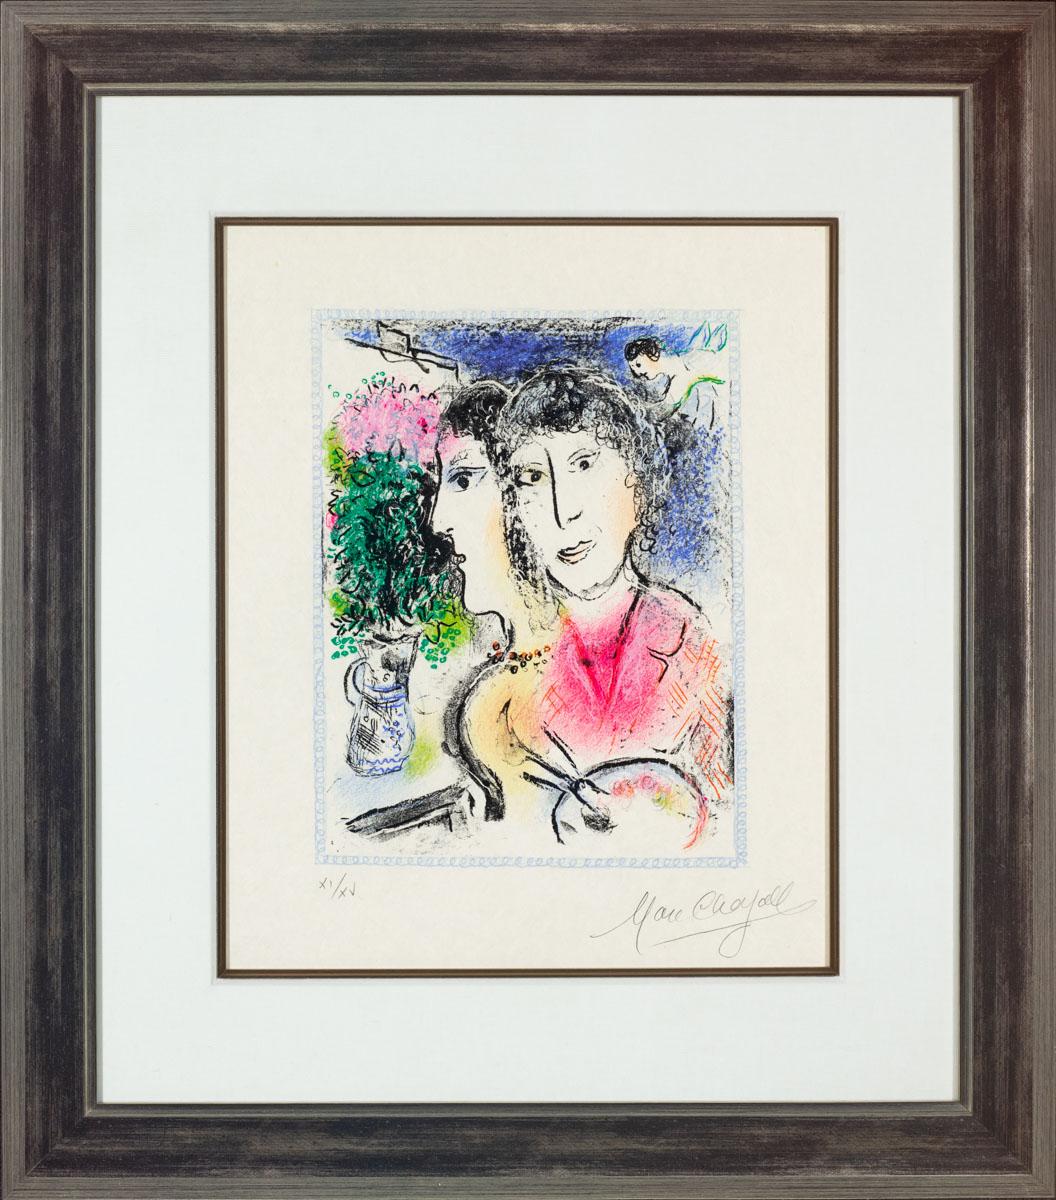 Doppelporträt an der Staffelei, 1976 (M.835) – Print von Marc Chagall